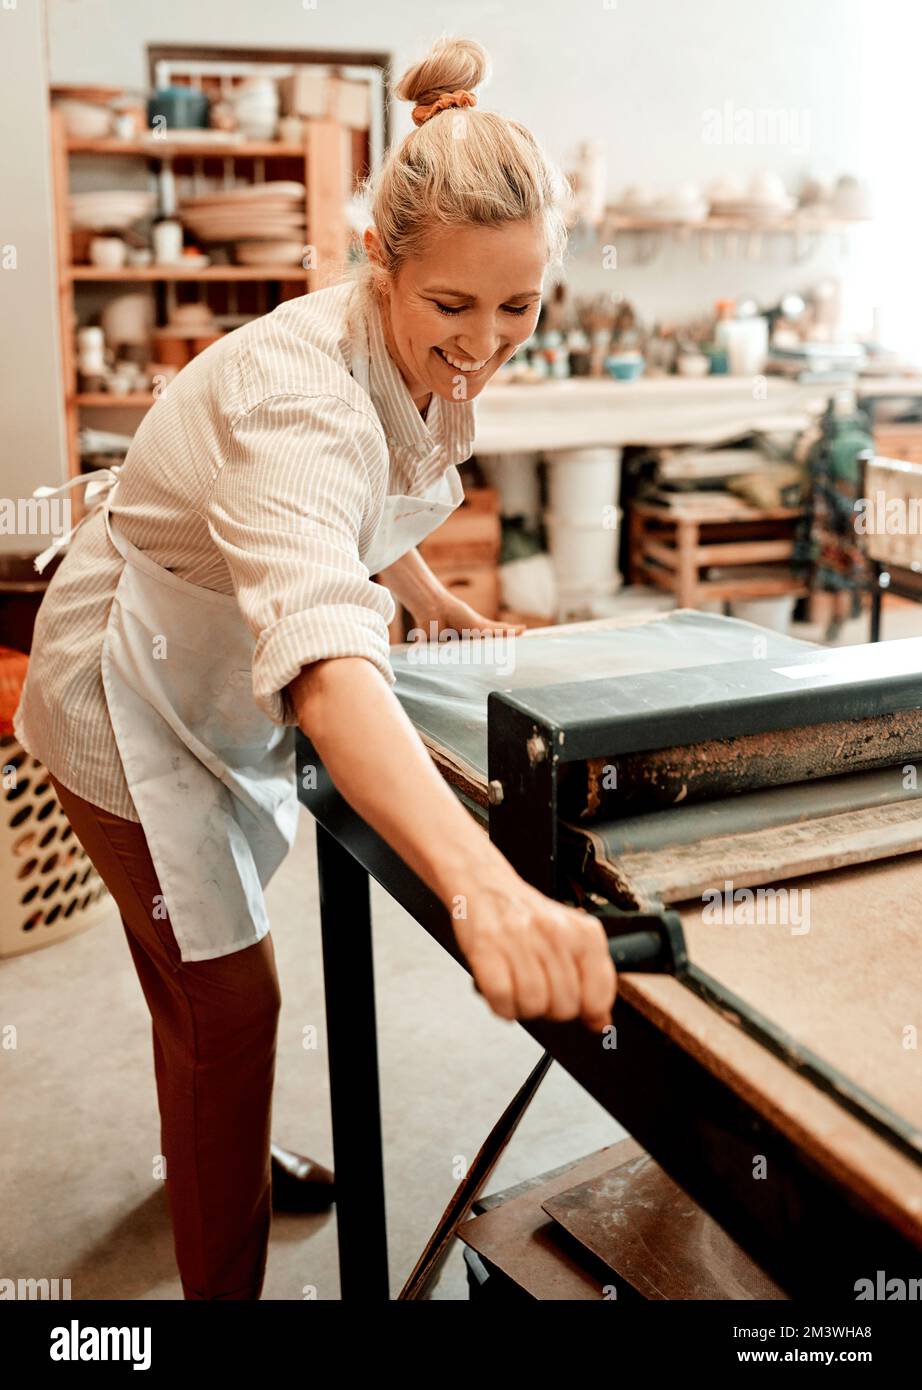 Du würdest auch lächeln, wenn du Töpfer wärst. Eine Kunsthandwerkerin, die in ihrer Töpferwerkstatt arbeitet. Stockfoto